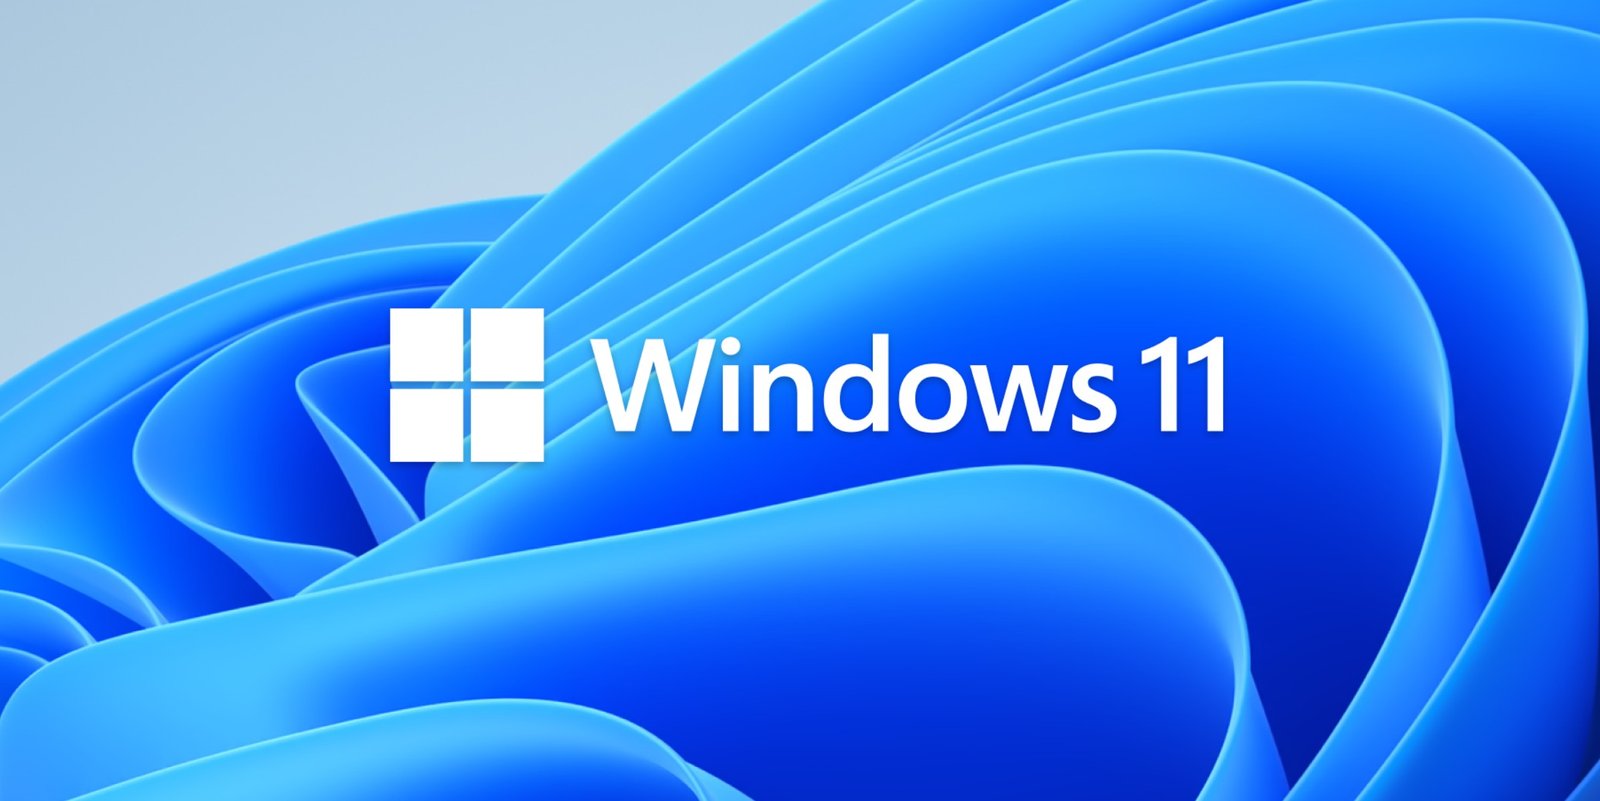 Así es la etiqueta que traerán los ordenadores con Windows 11